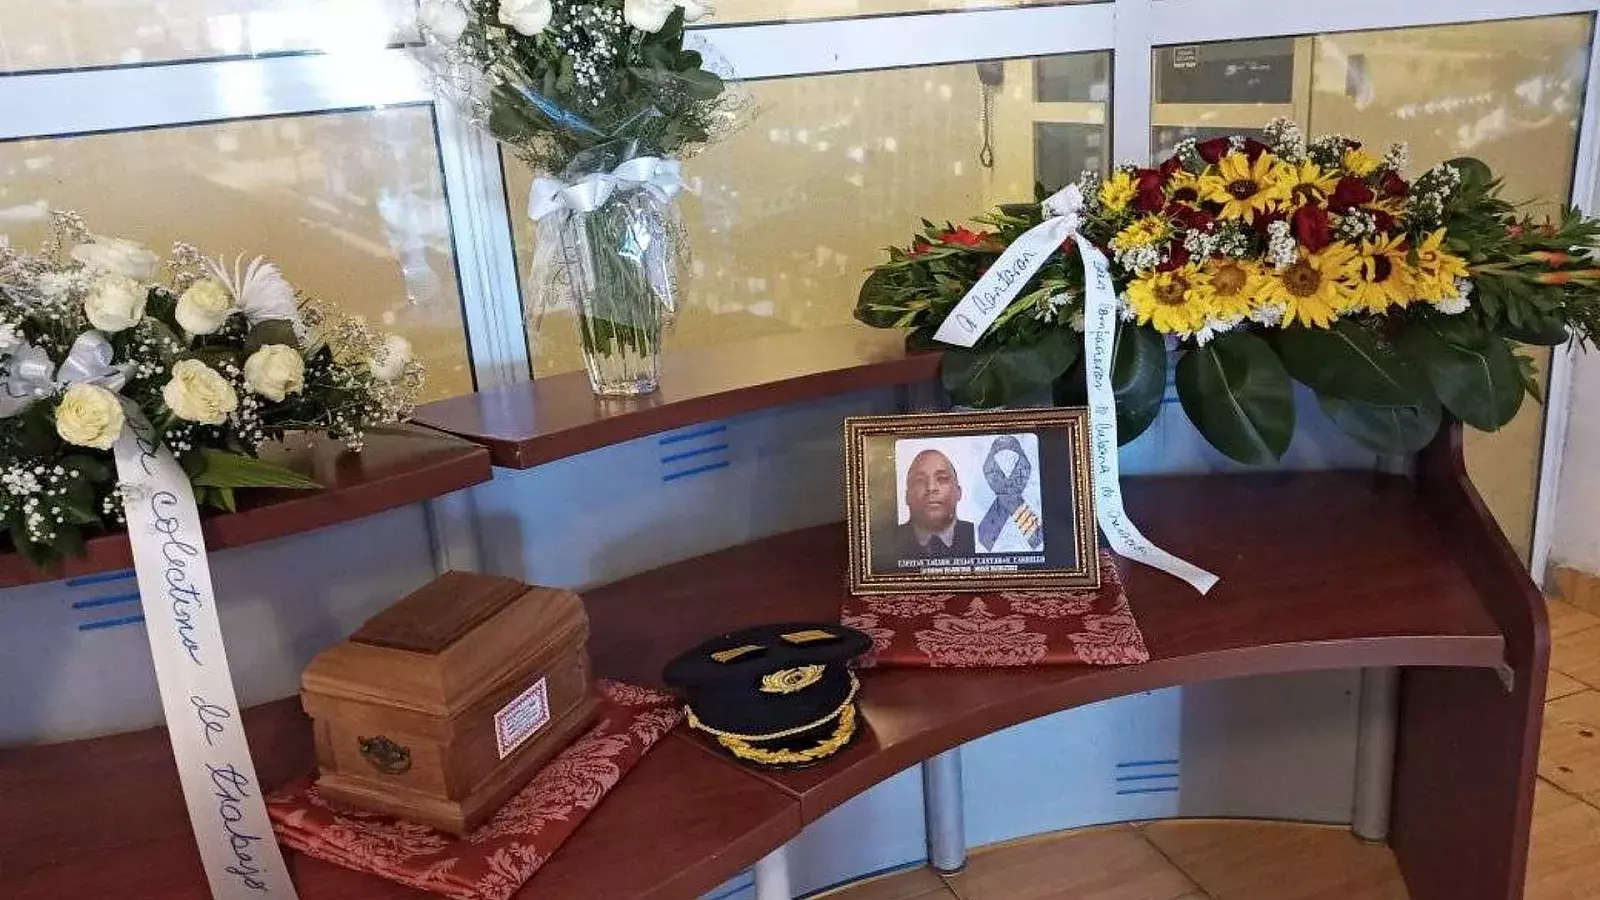 La empresa cubana publicó imágenes de un homenaje que sus trabajadores le realizaron al Capitán Lantaron Carrillo, pero no dieron detalles sobre su fallecimiento